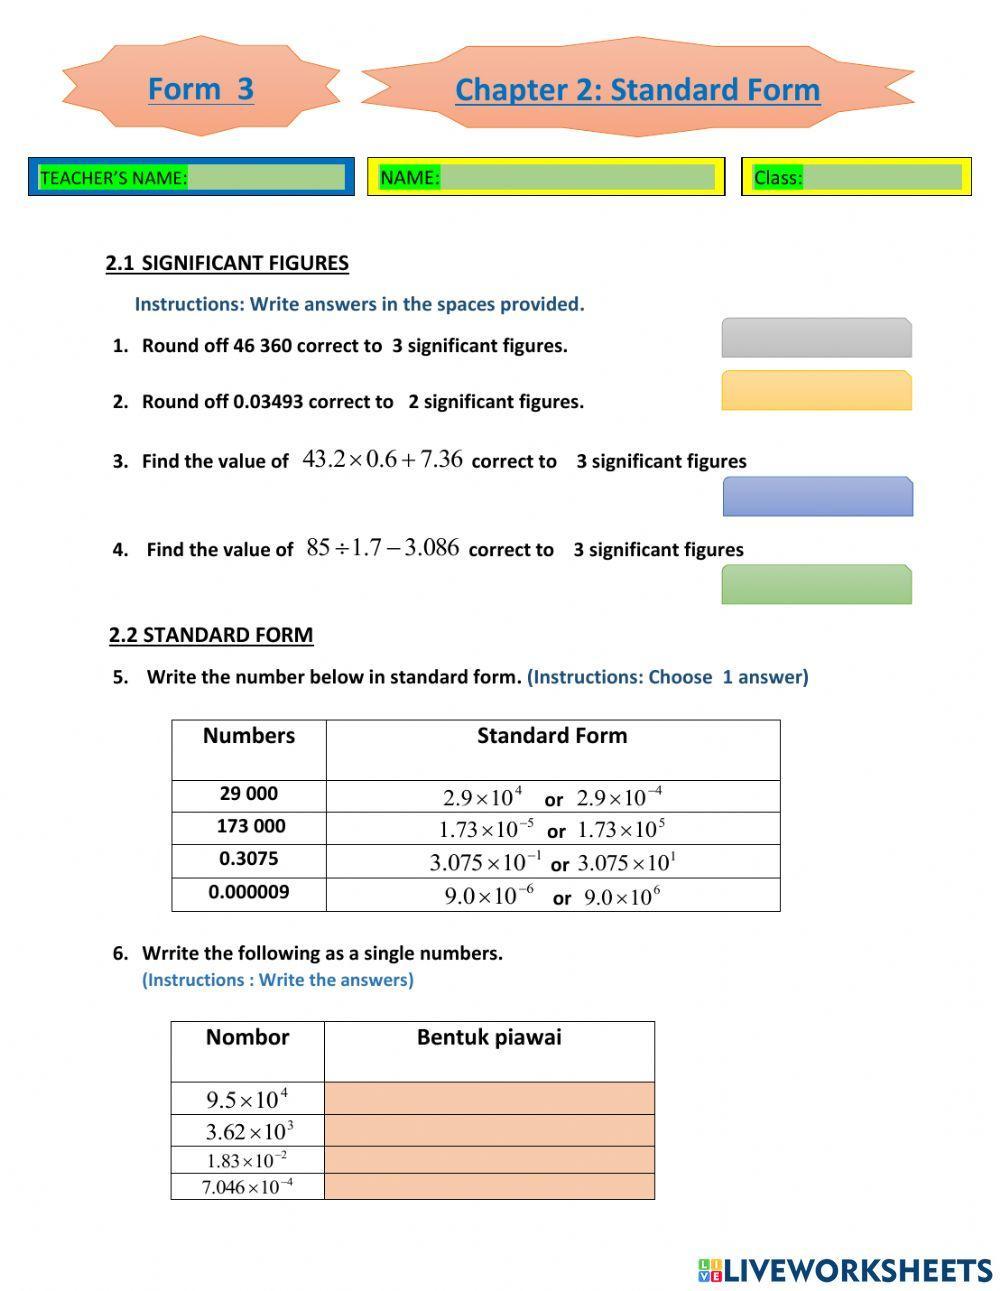 Chapter 2 standard form mathematics form 3